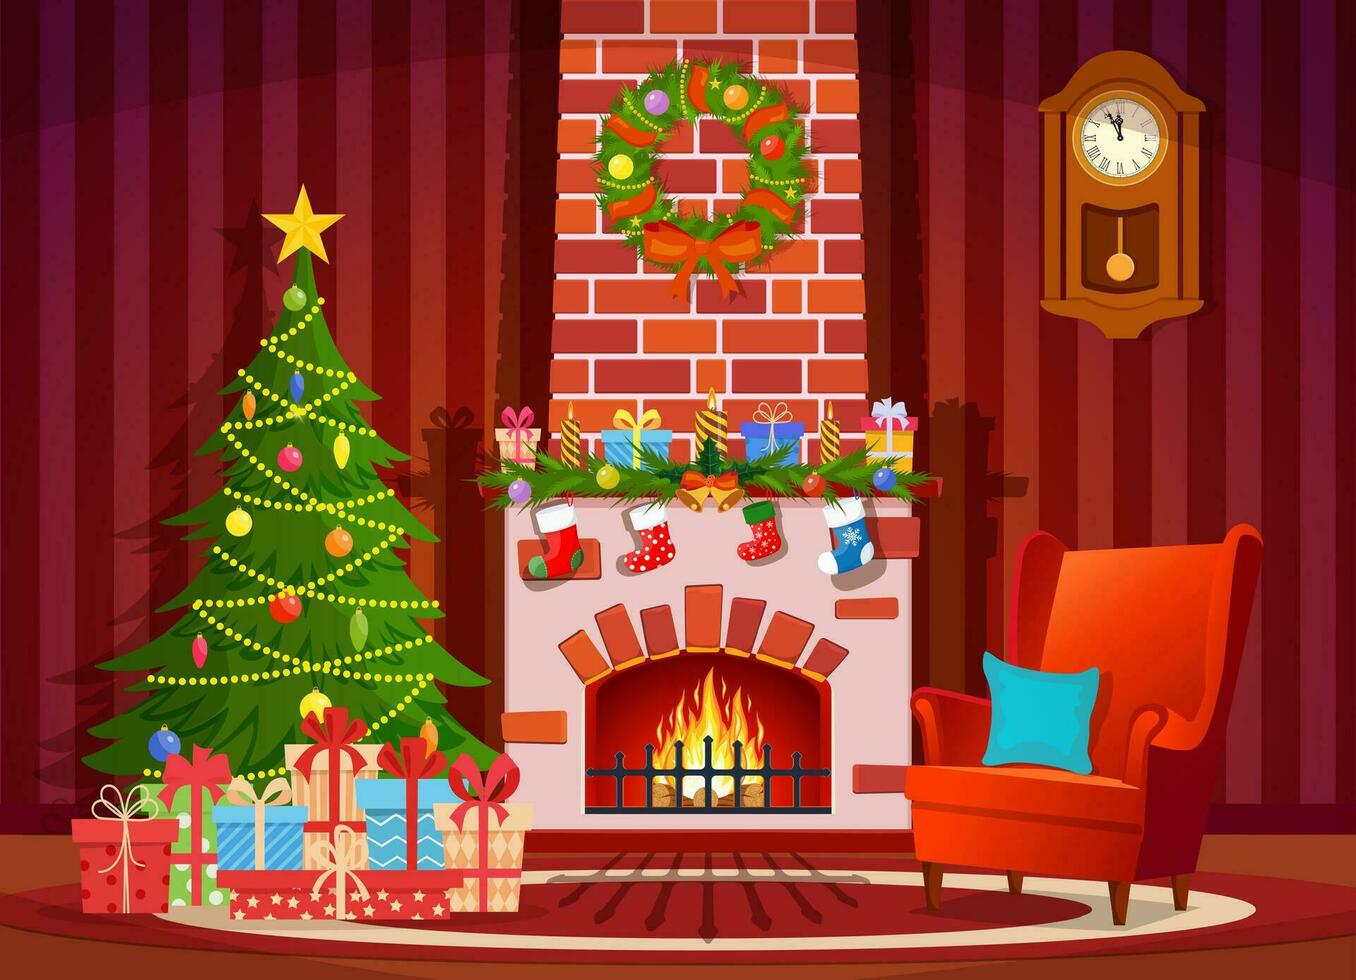 Kerstmis interieur van de leven kamer met een Kerstmis boom, cadeaus en een haard. vector illustratie